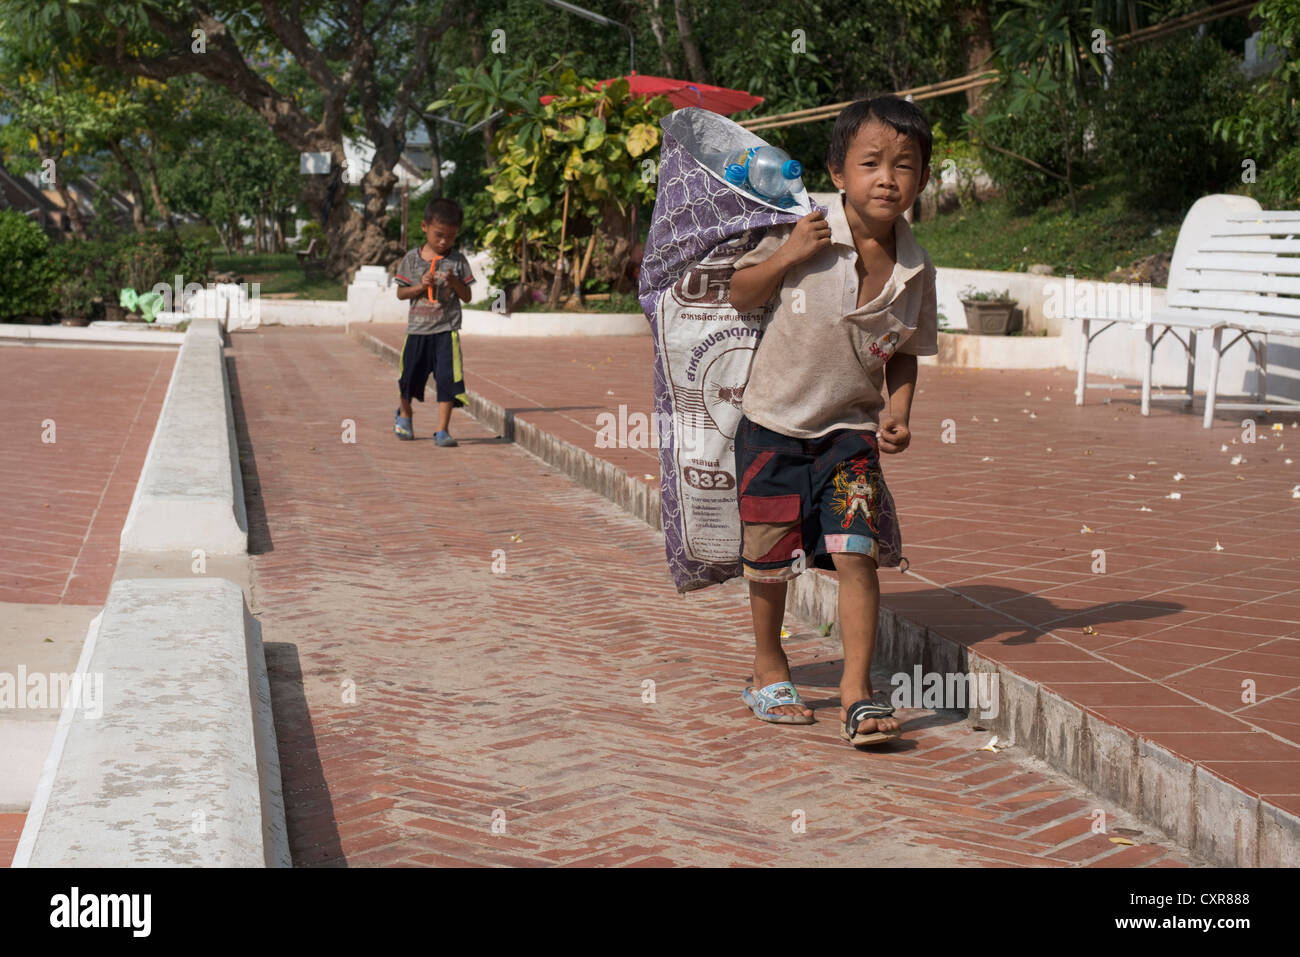 Ein Junge trägt eine Plünderung Kunststoff-Flaschen, die er gesammelt hat, um für das recycling zu verkaufen. Luang Prabang, Laos Stockfoto